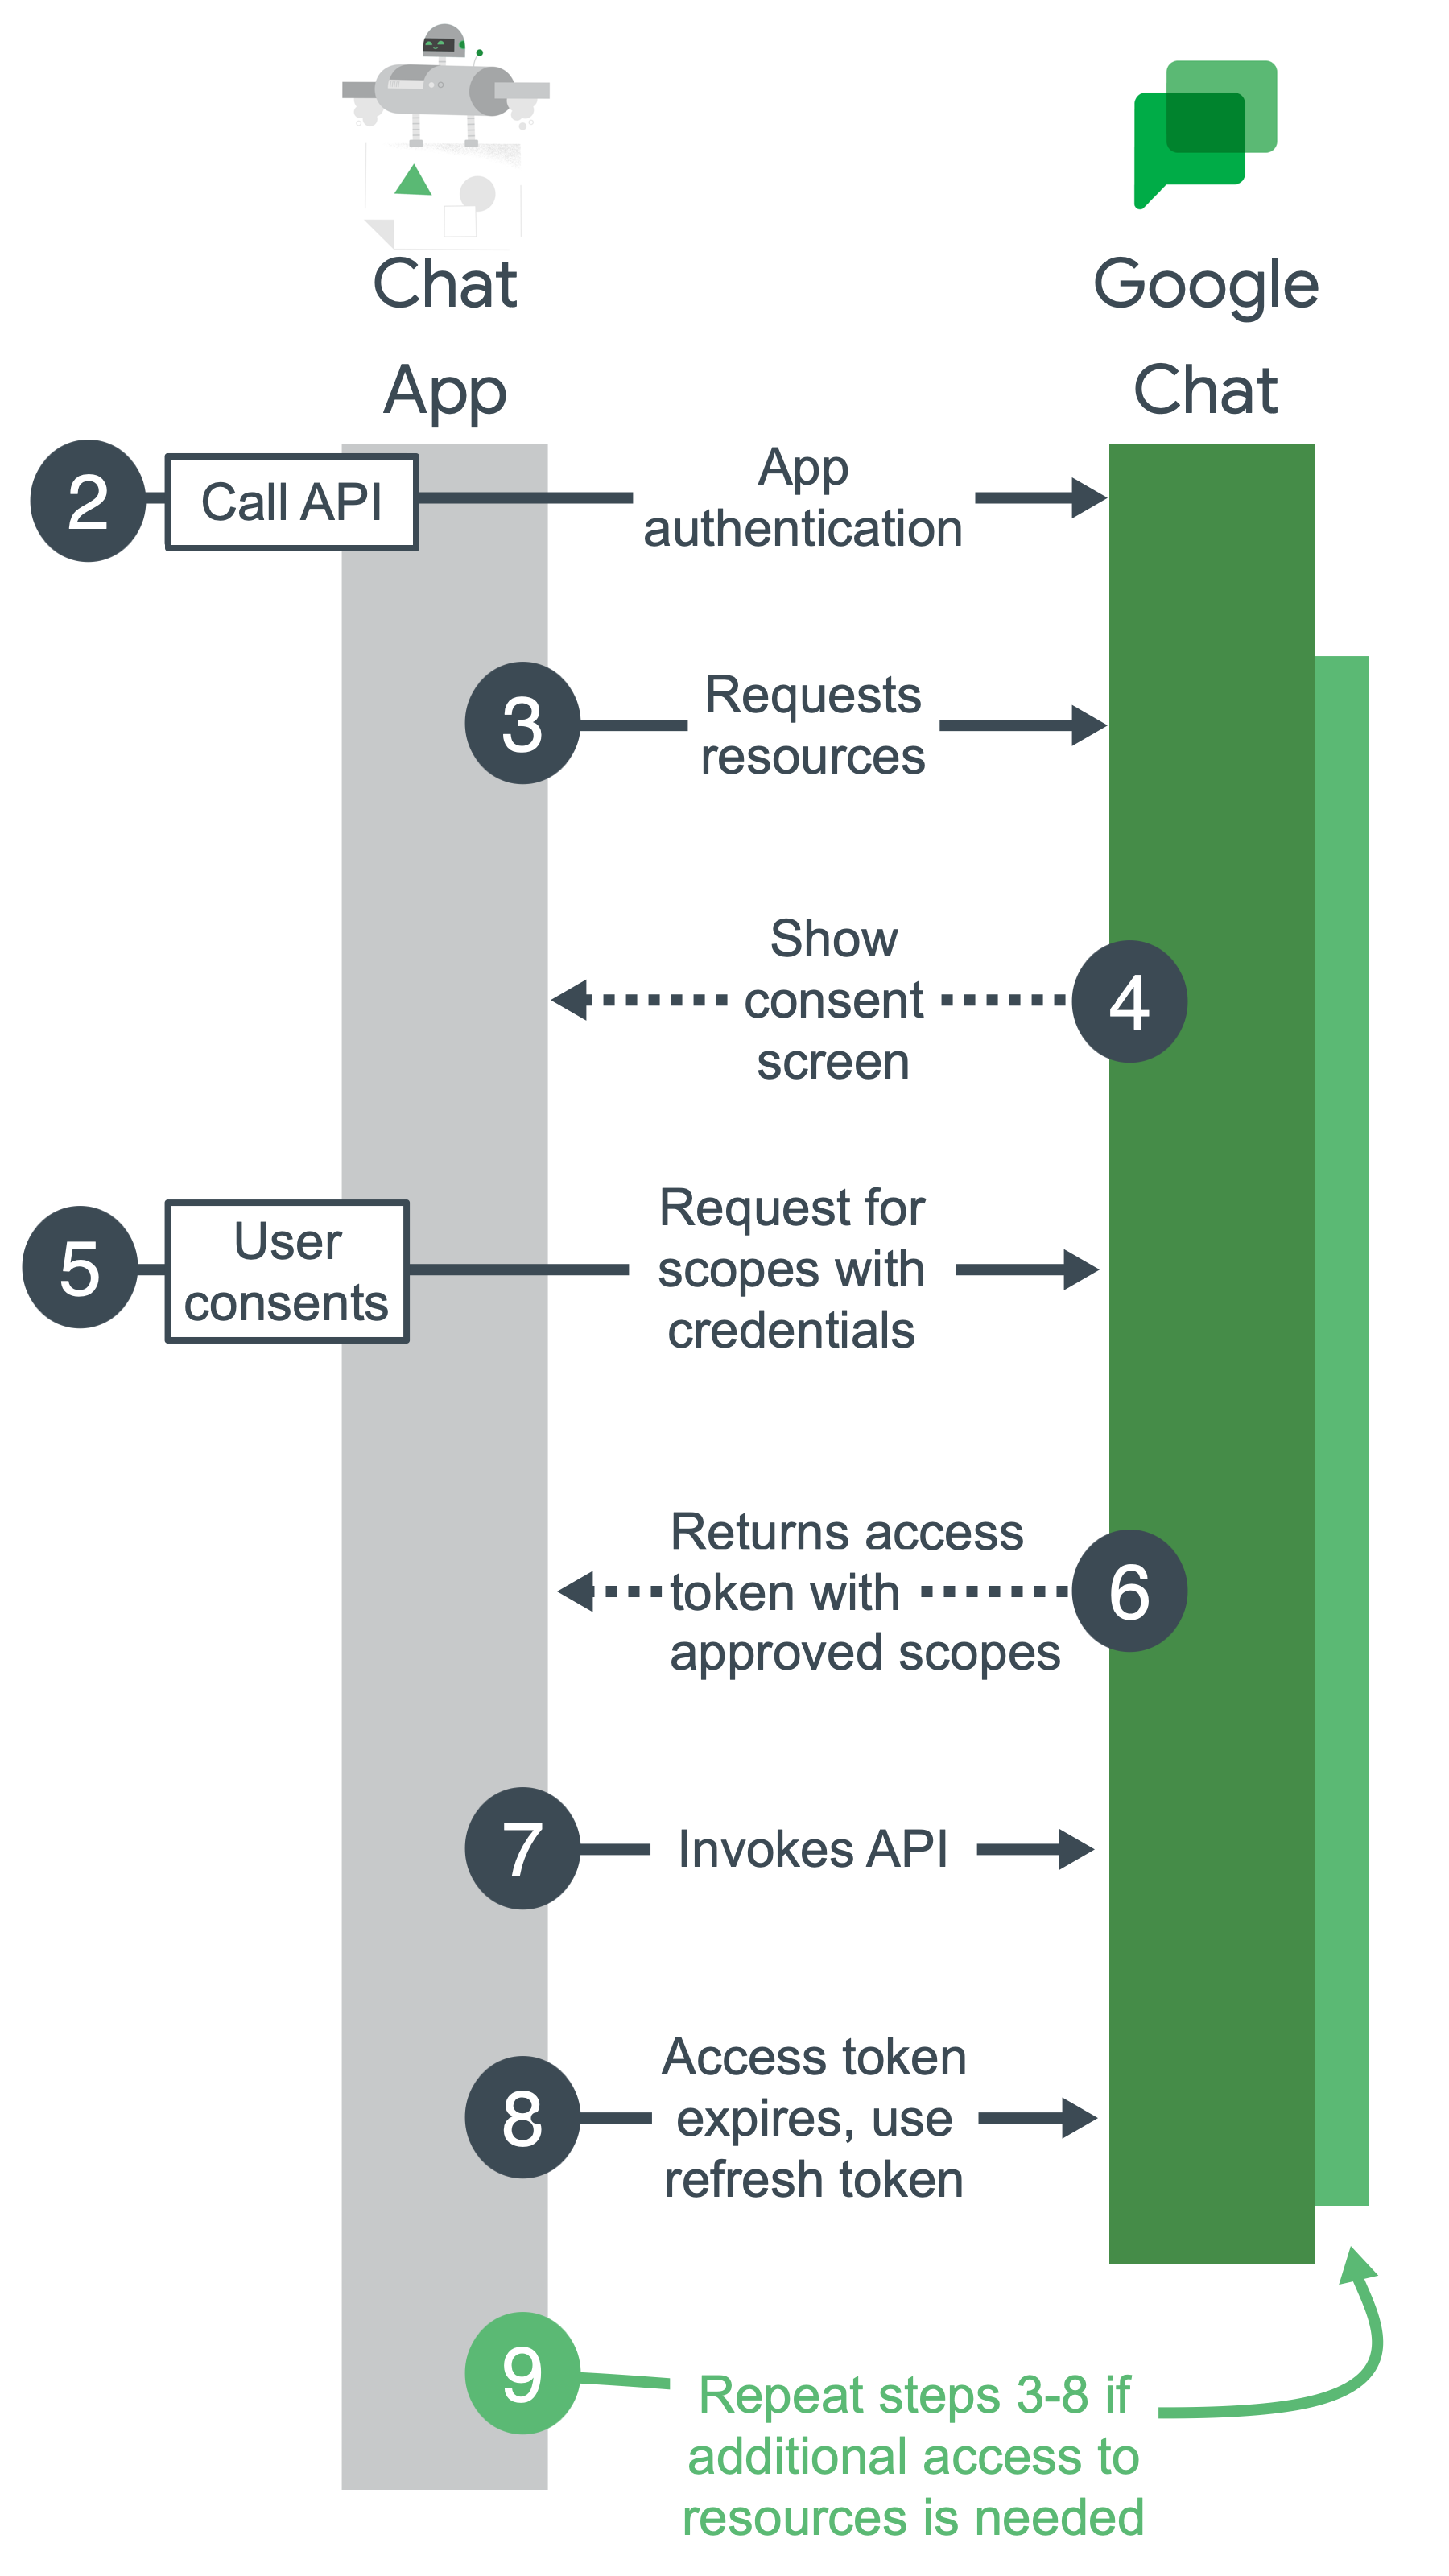 Google Chat kimlik doğrulaması ve yetkilendirmesi için üst düzey adımlar